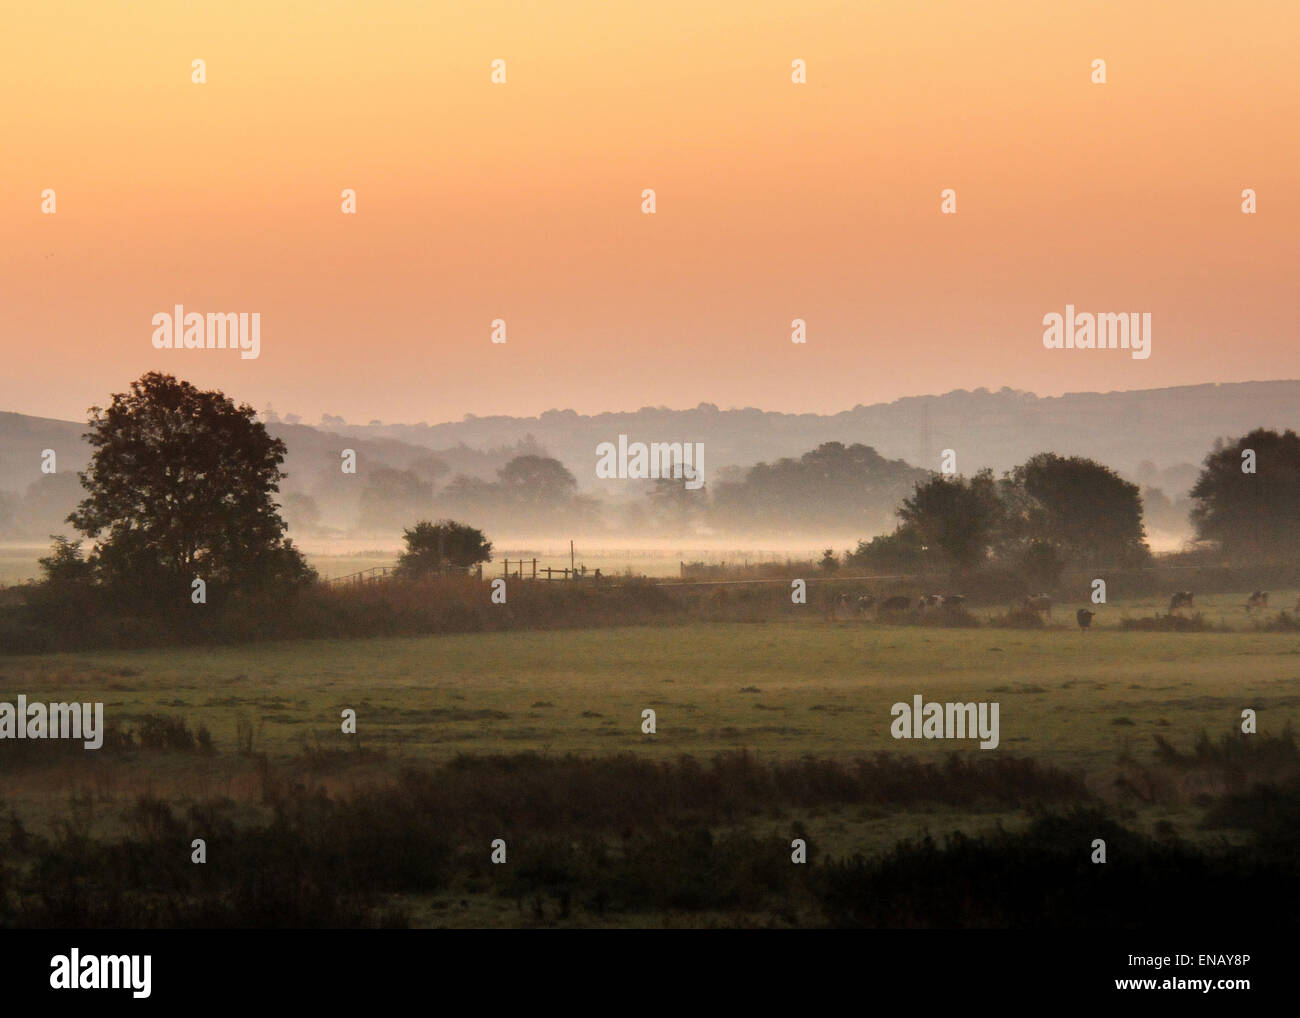 La mattina presto sulla valle Taw, North Devon; gli agricoltori i campi adiacenti al fiume Taw nei primi Nebbia di mattina Foto Stock